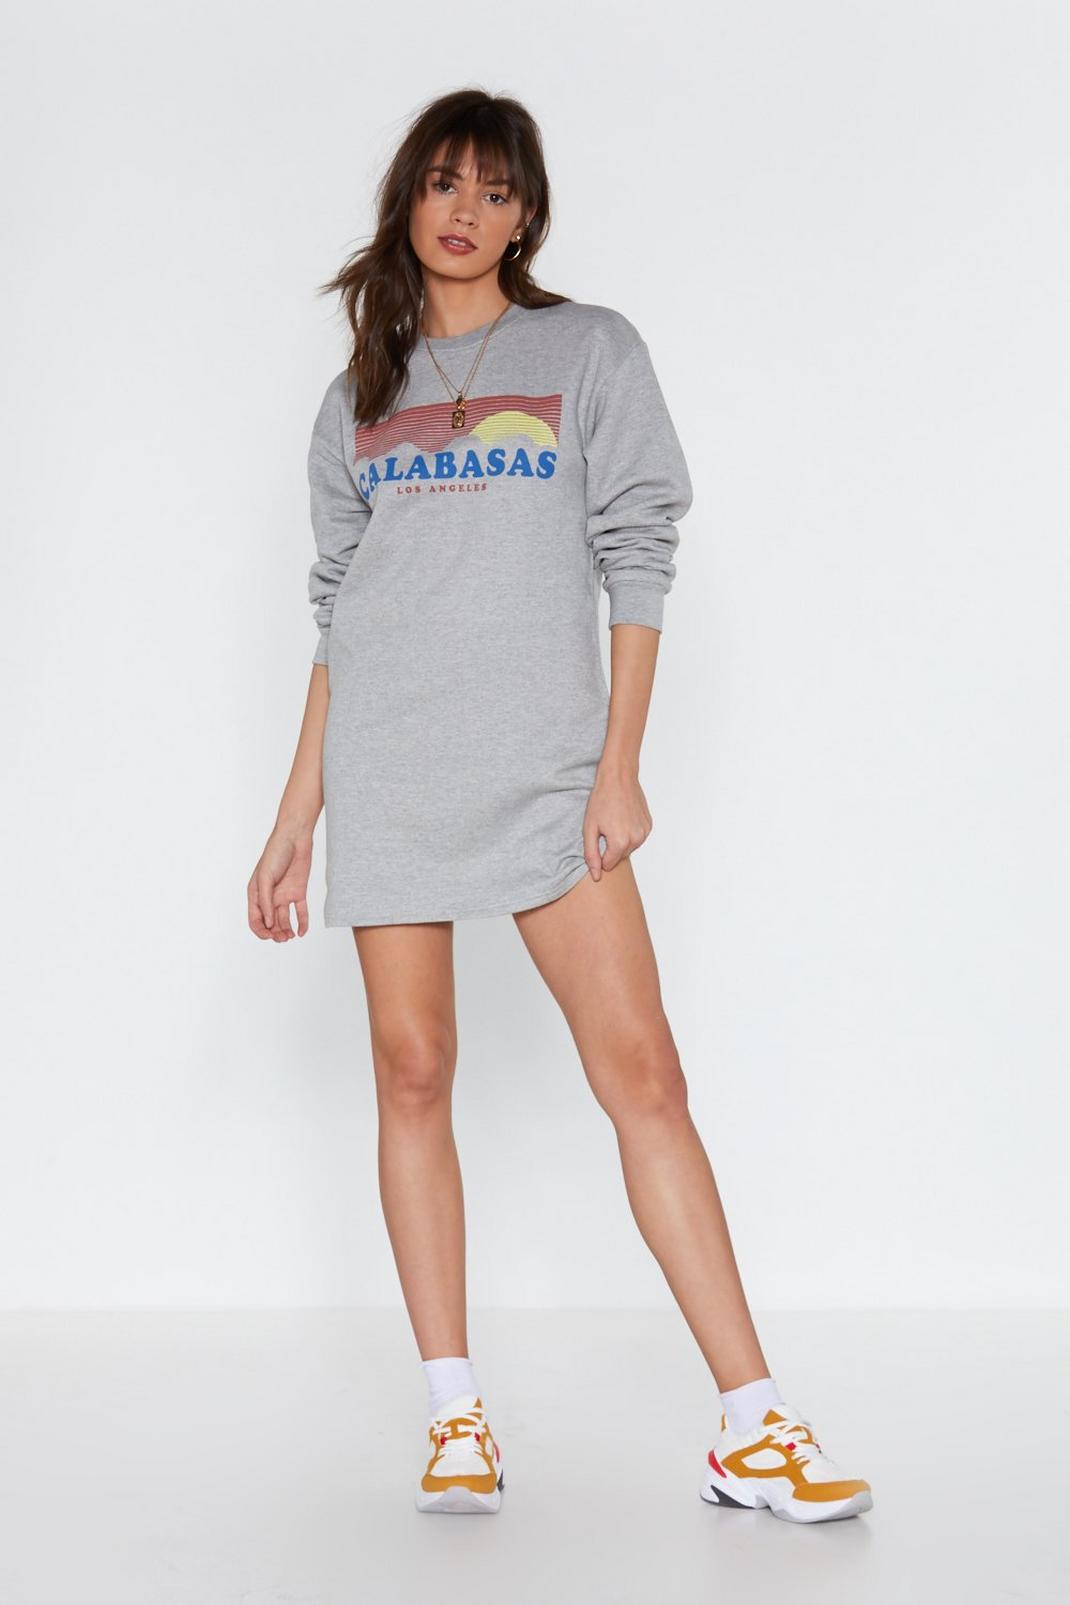 Calabasas Graphic Sweatshirt Dress image number 1